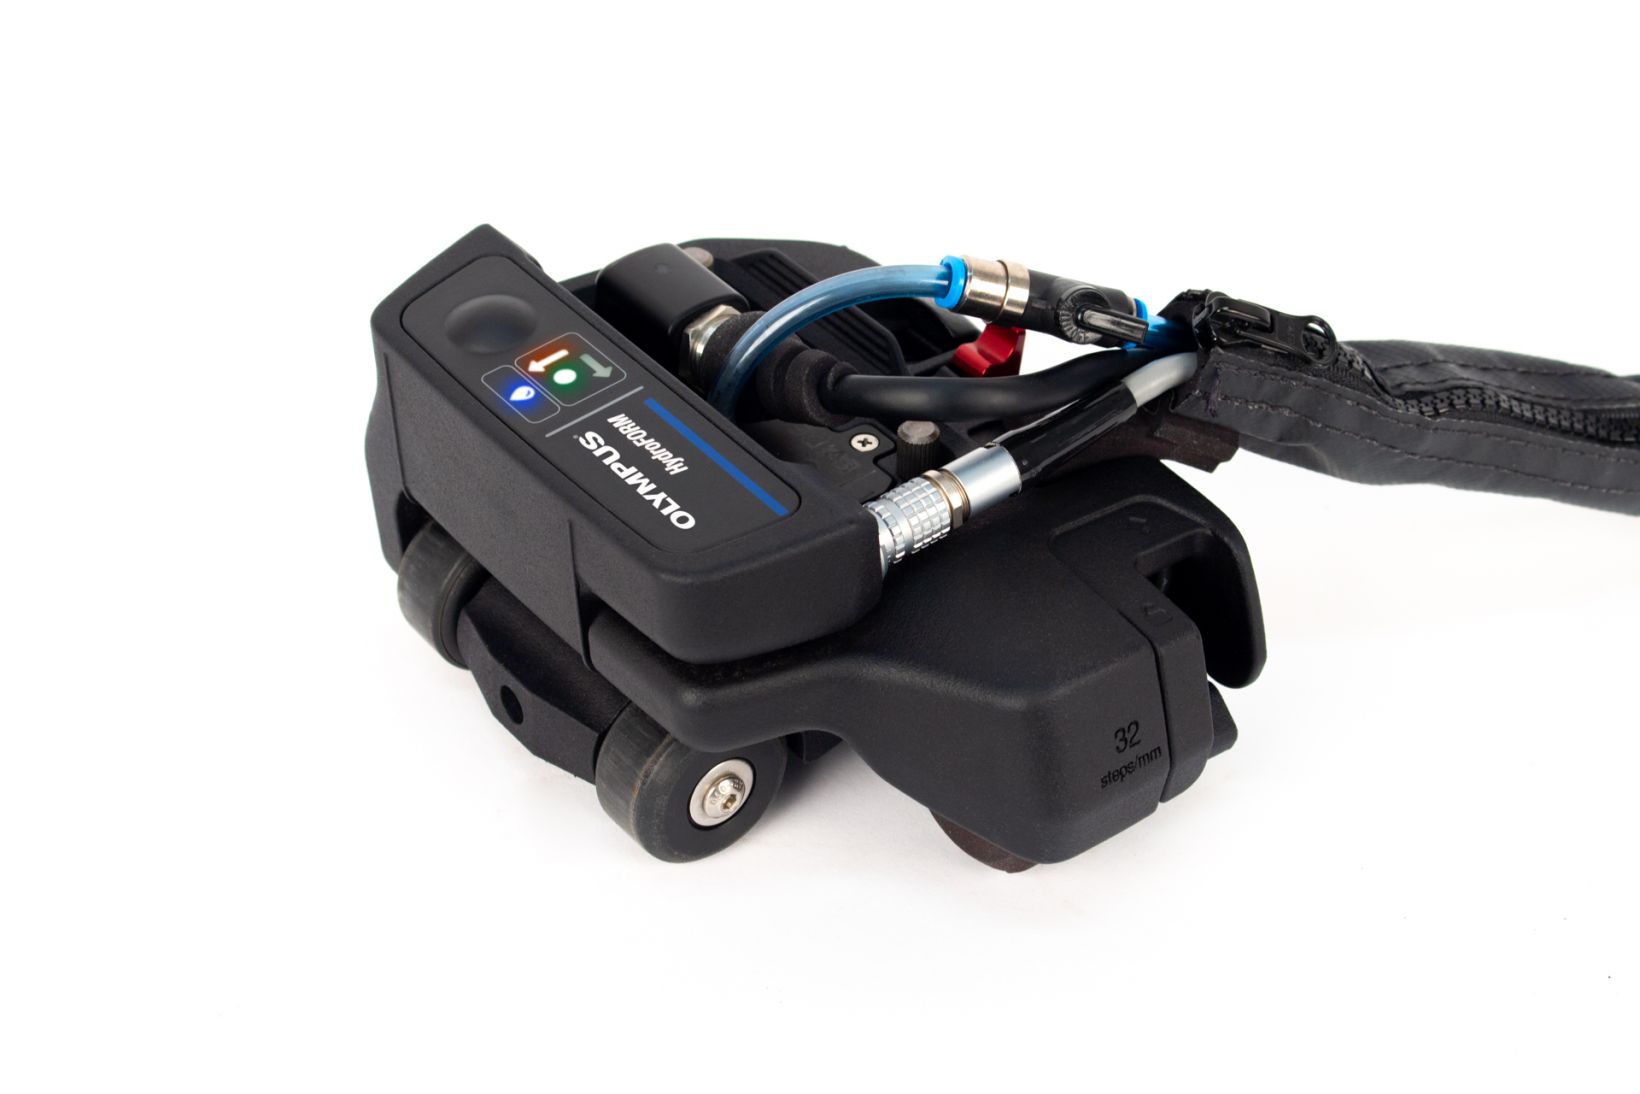 Nuevo escáner HydroFORM con el módulo ScanDeck que integra indicadores LED y el botón de control para activar el OmniScan X3